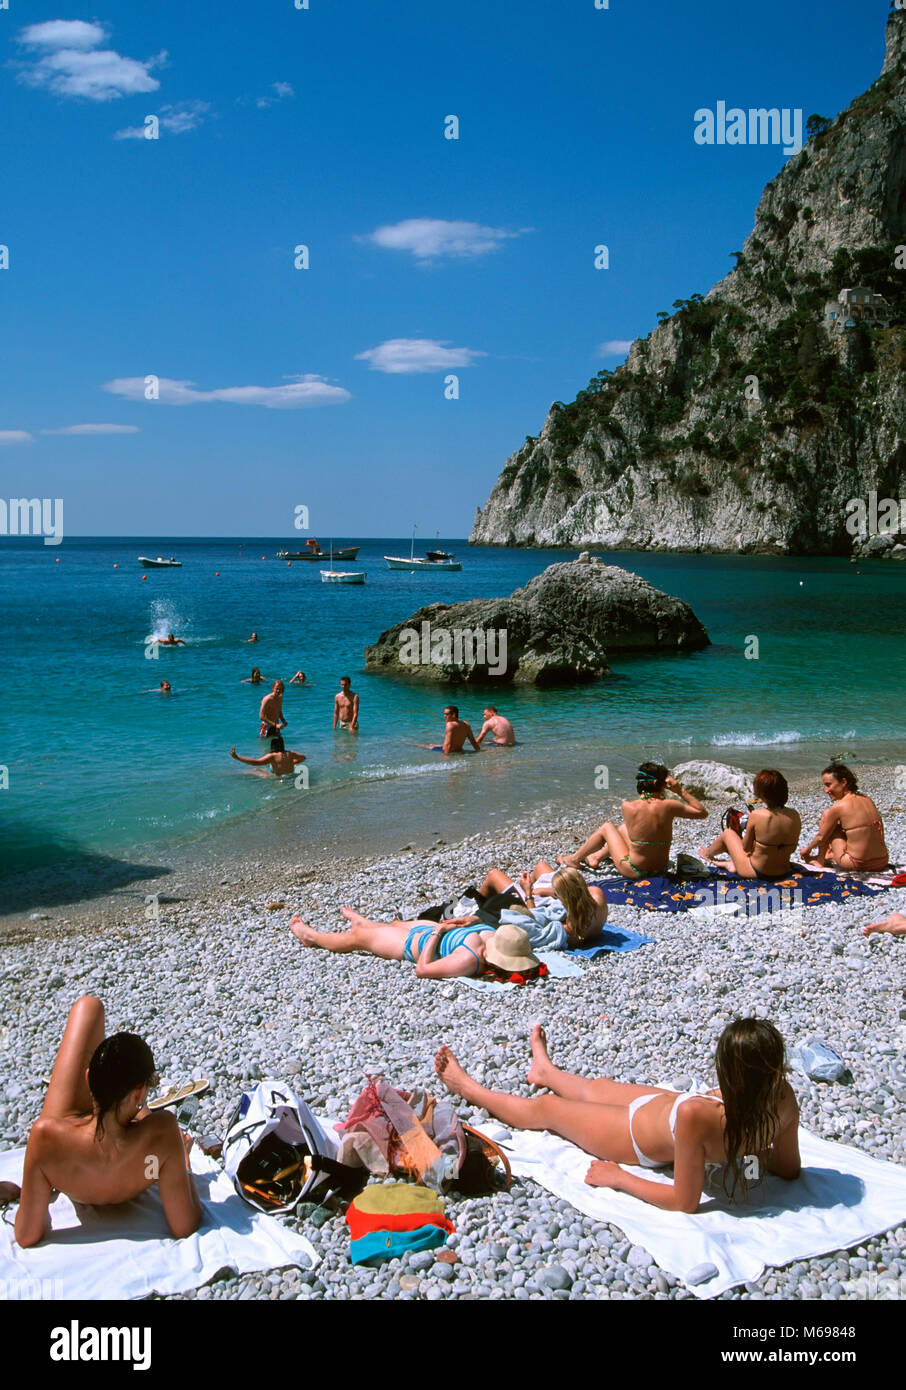 Marina Piccola beach, Capri island, Italy, Europe Stock Photo